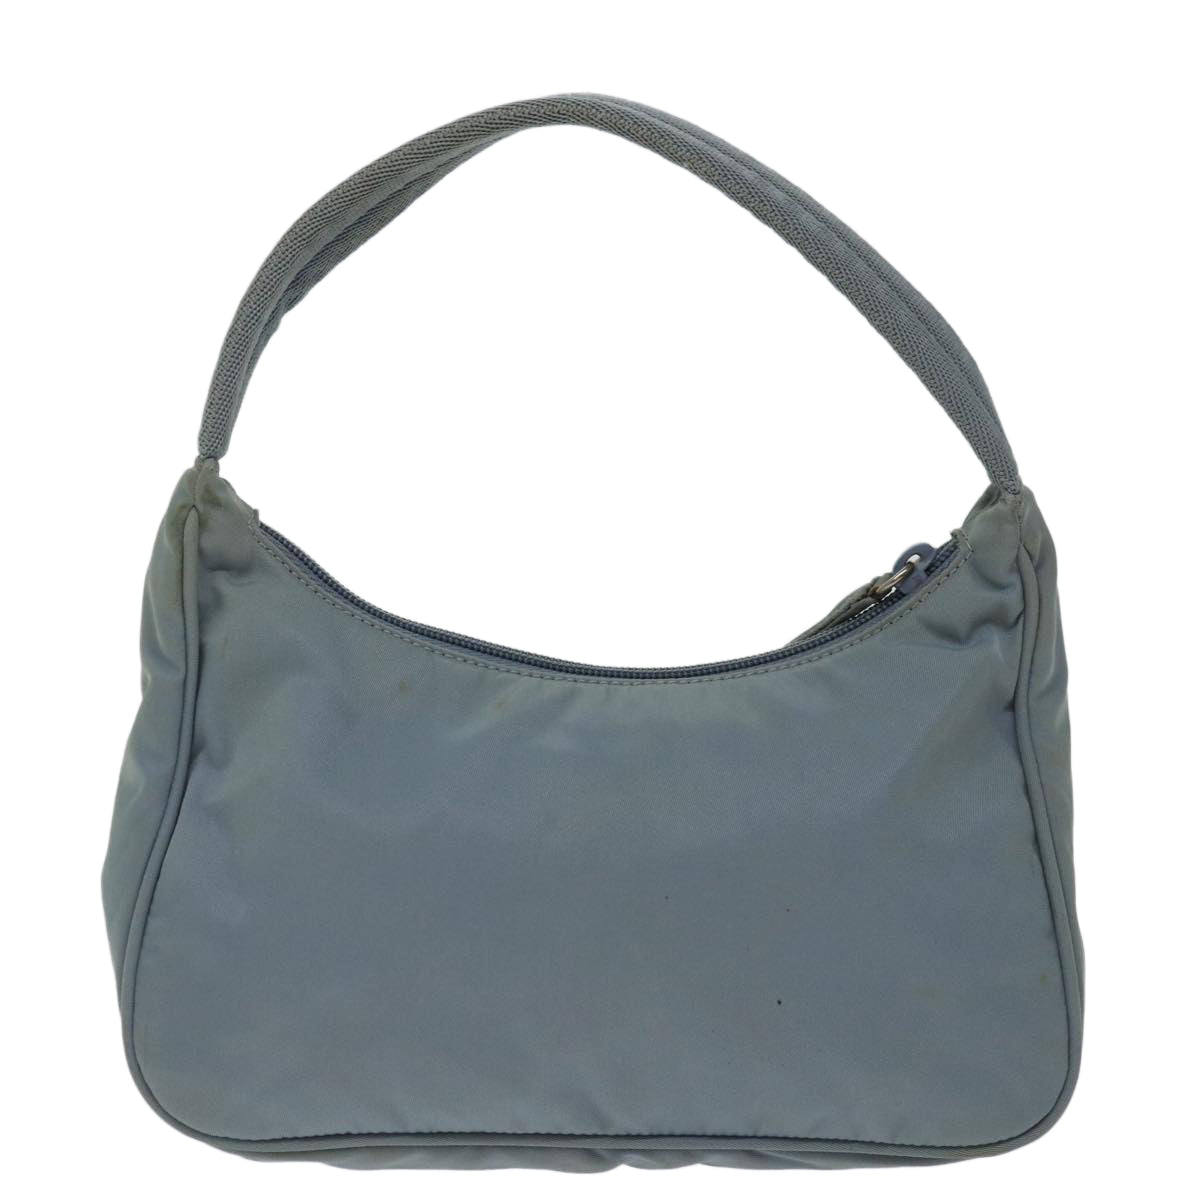 PRADA Hand Bag Nylon Light Blue Auth bs12579